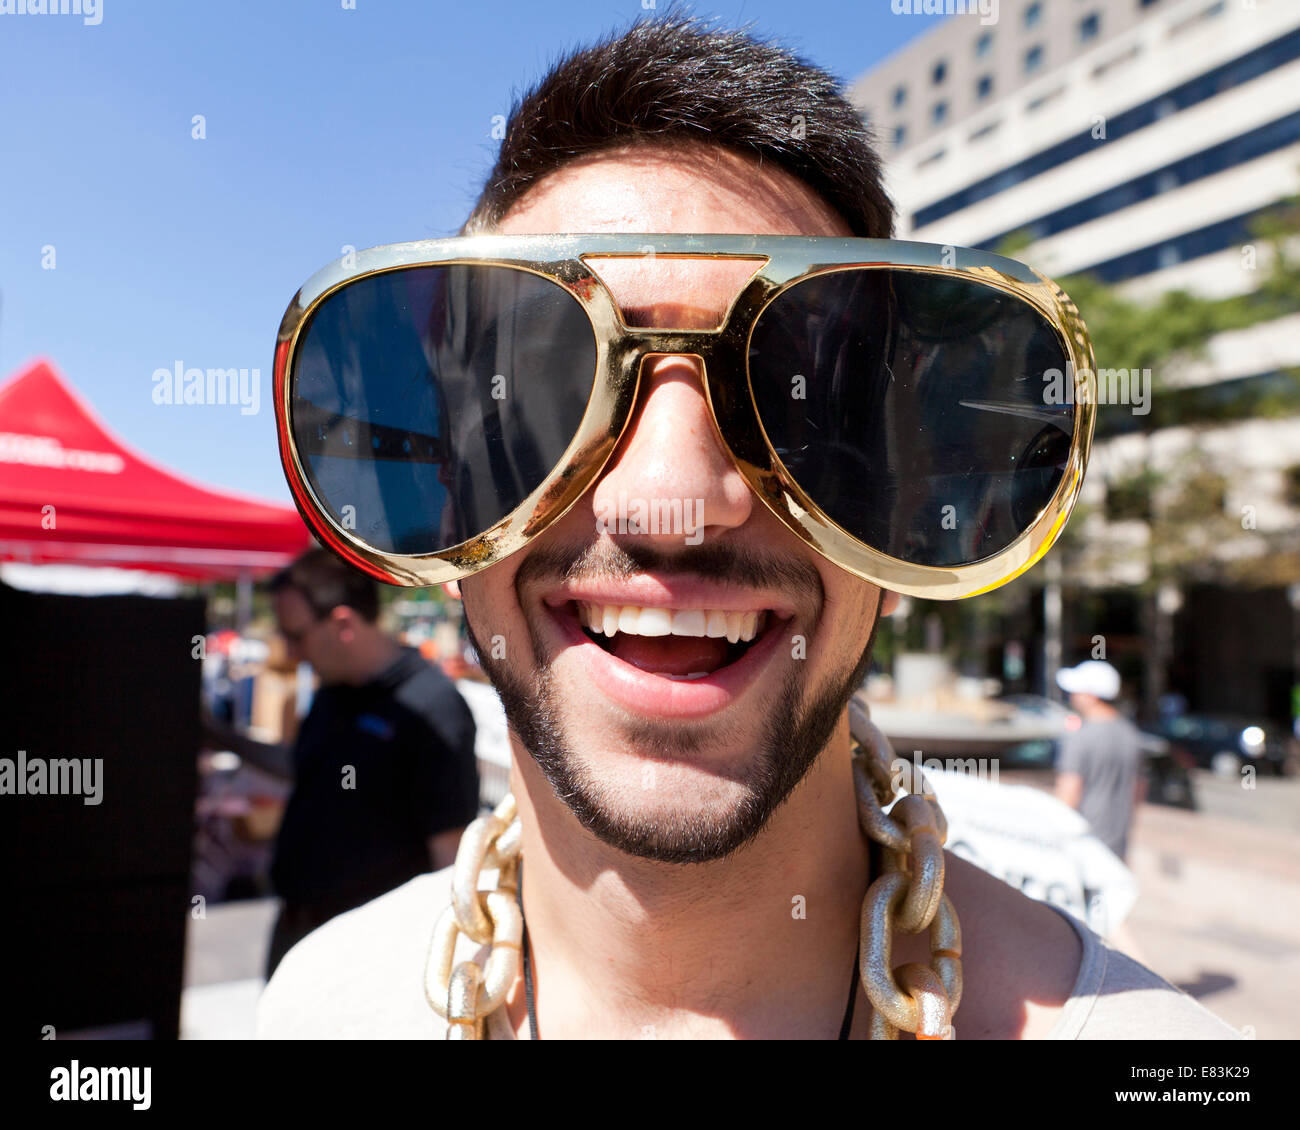 https://www.alamy.com/aggregator-api/download?url=https://c8.alamy.com/comp/E83K29/young-man-wearing-funny-oversize-novelty-sunglasses-usa-E83K29.jpg